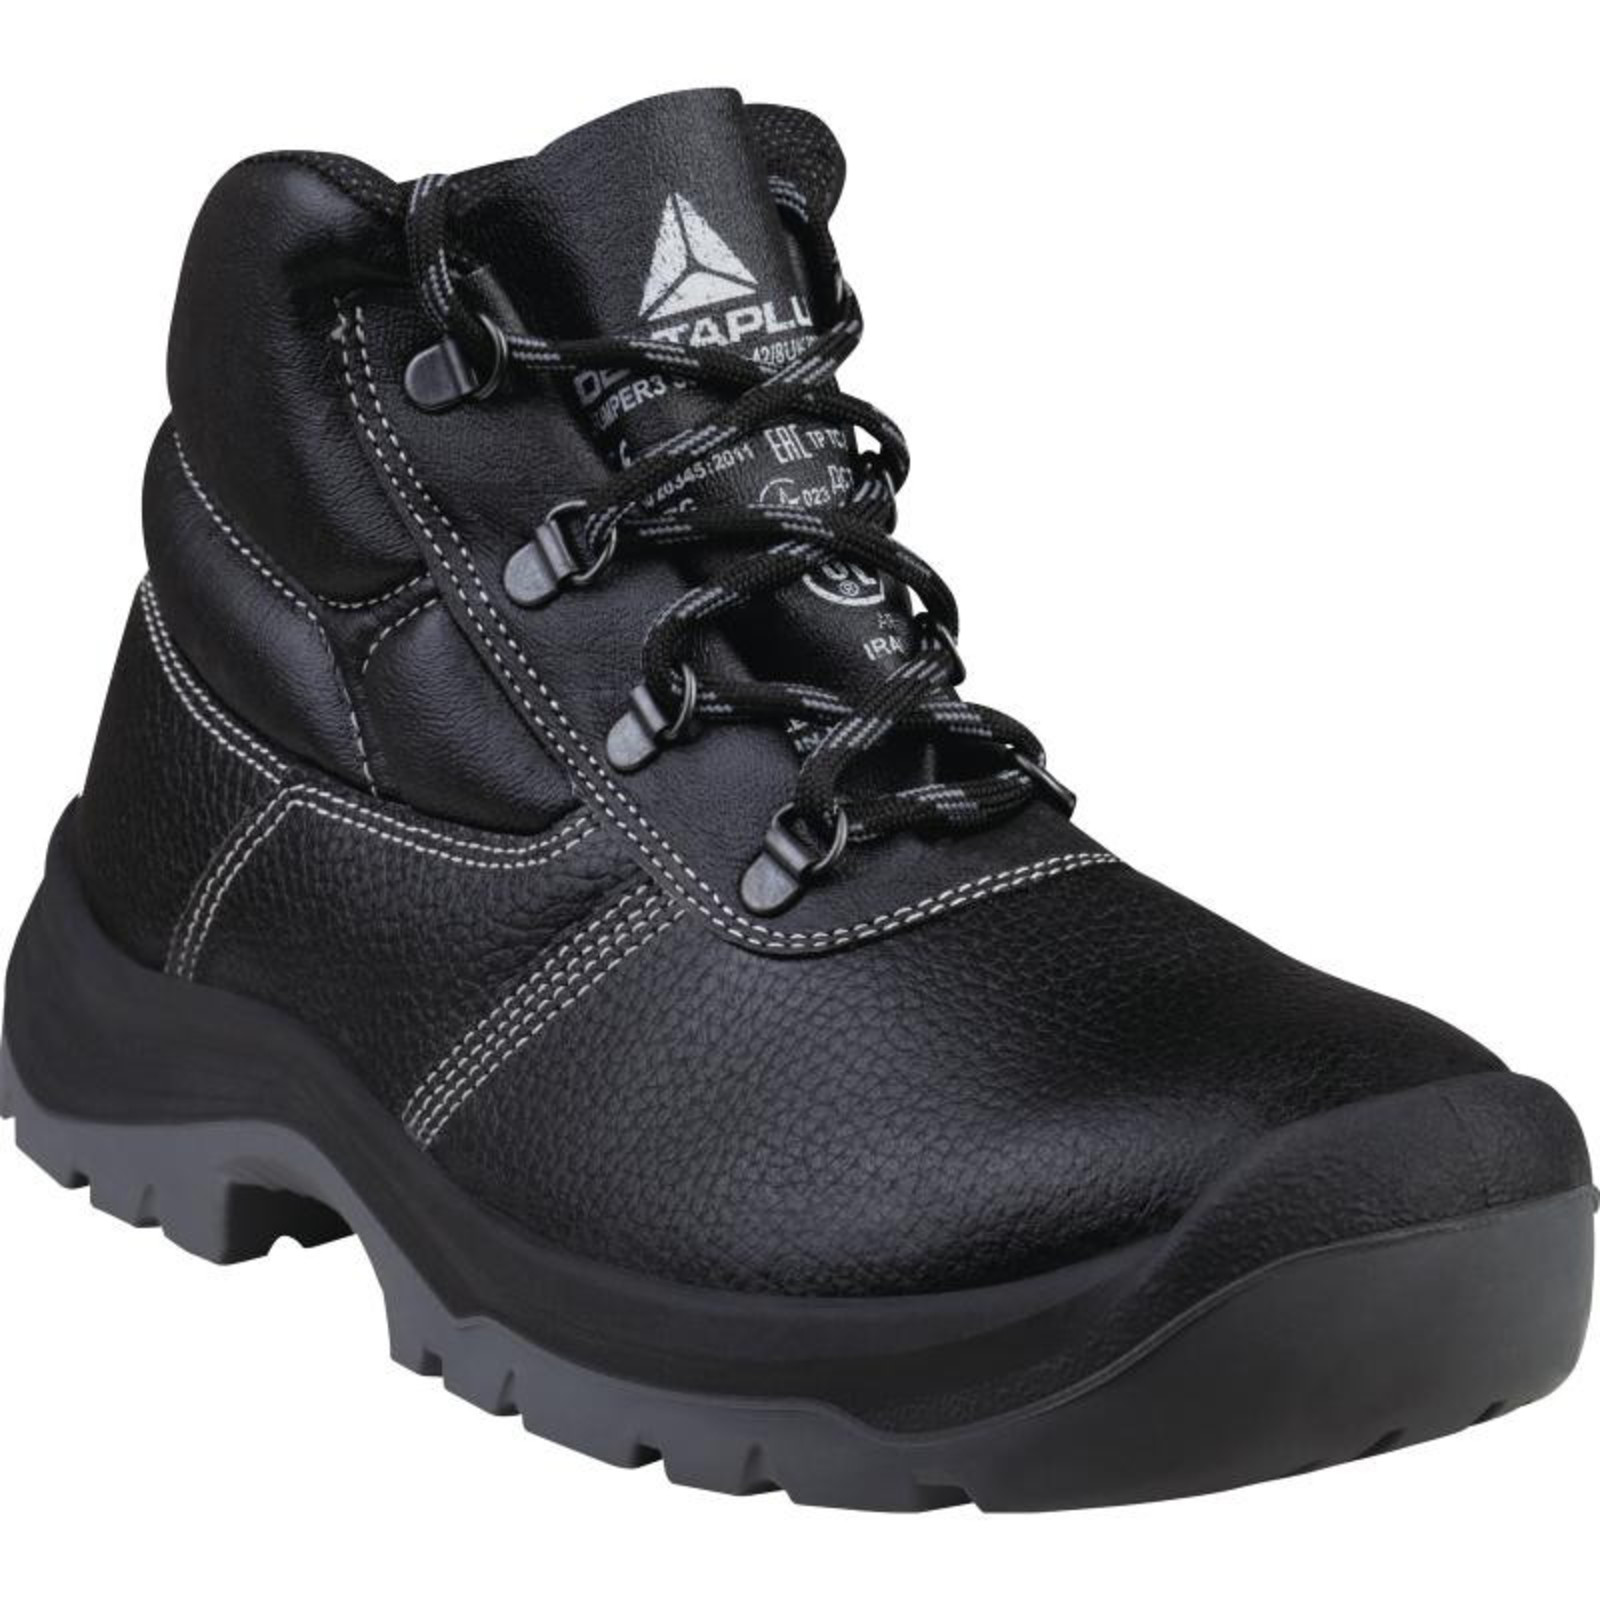 Členková bezpečnostná obuv Delta Plus Jumper3 S3 SRC - veľkosť: 47, farba: čierna